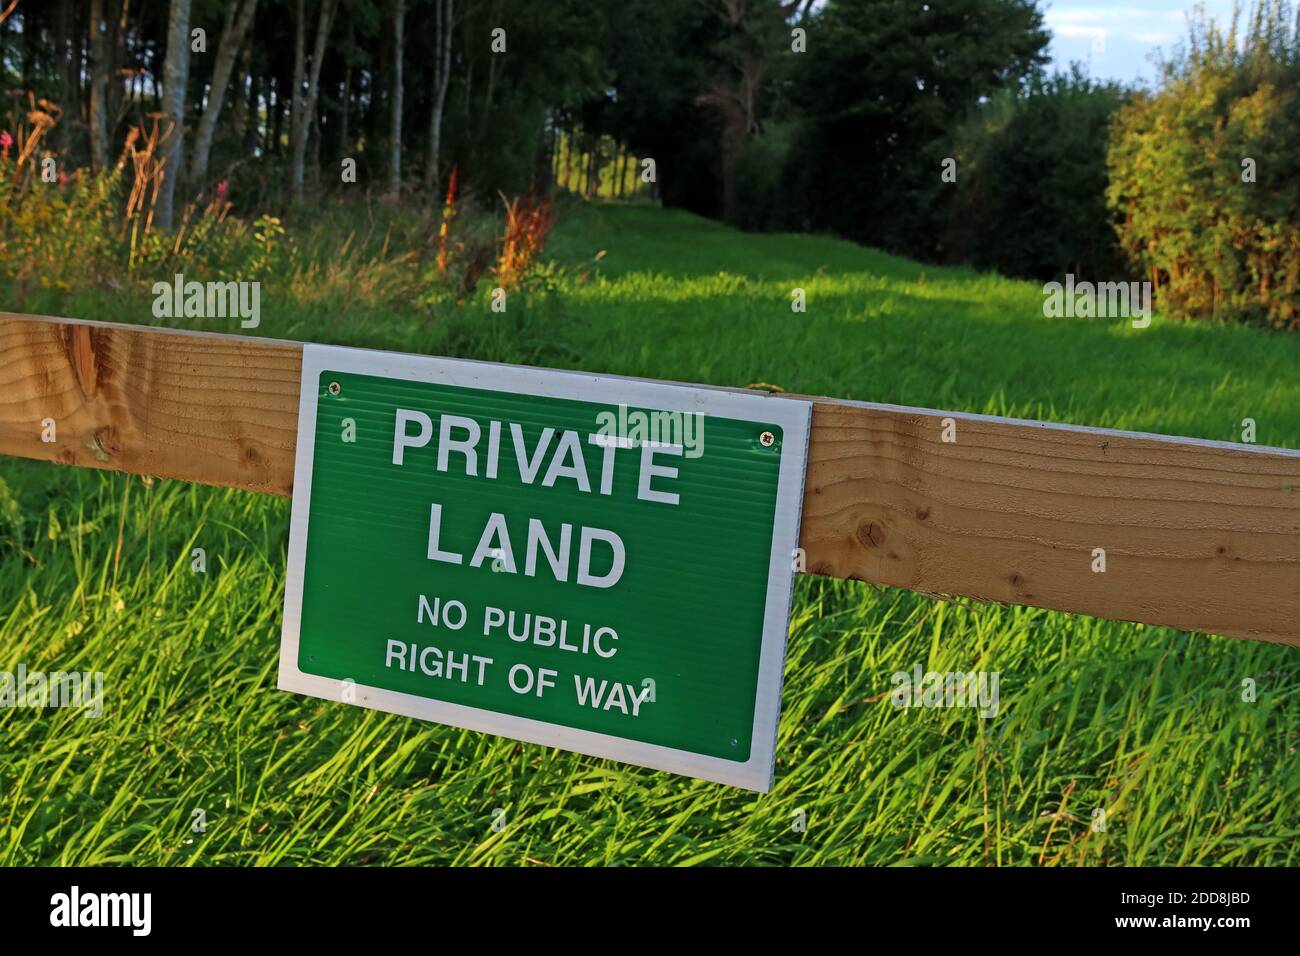 Grünes privates Landzeichen, kein öffentliches Zugangsrecht - bitte fernhalten - Zaun und Hinweis auf eine Grenze Stockfoto